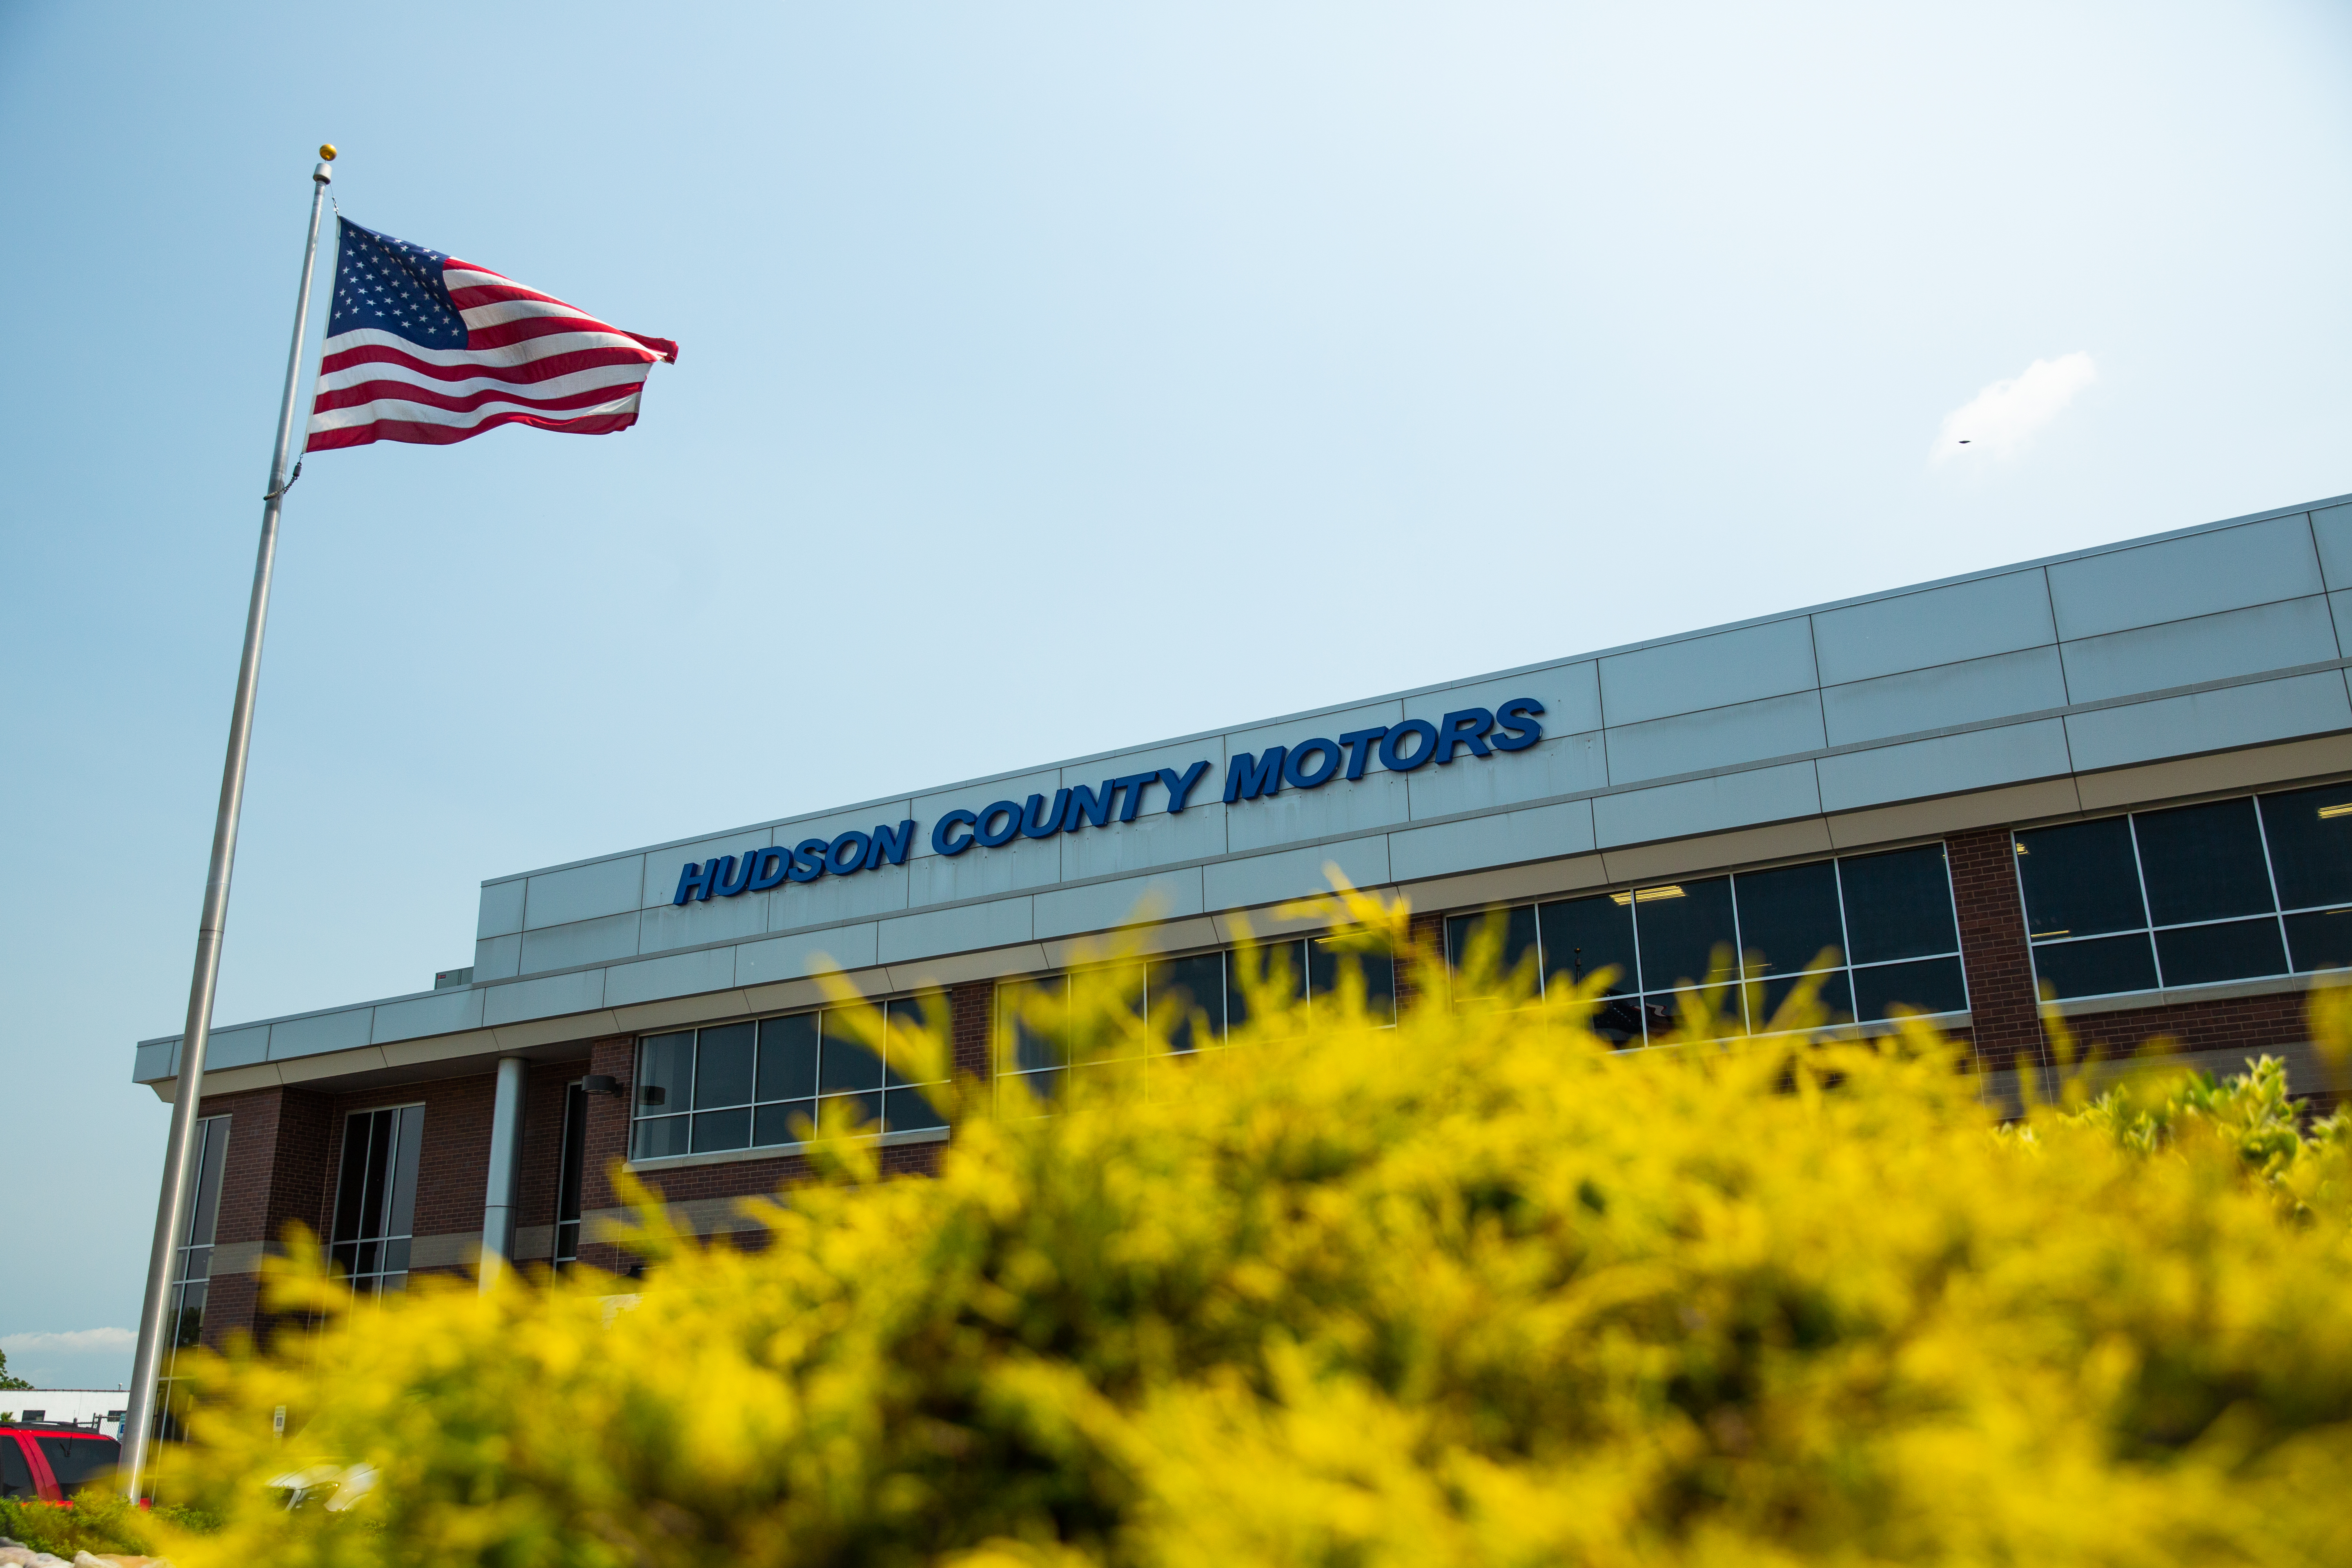 Hudson County Motors Exterior 1